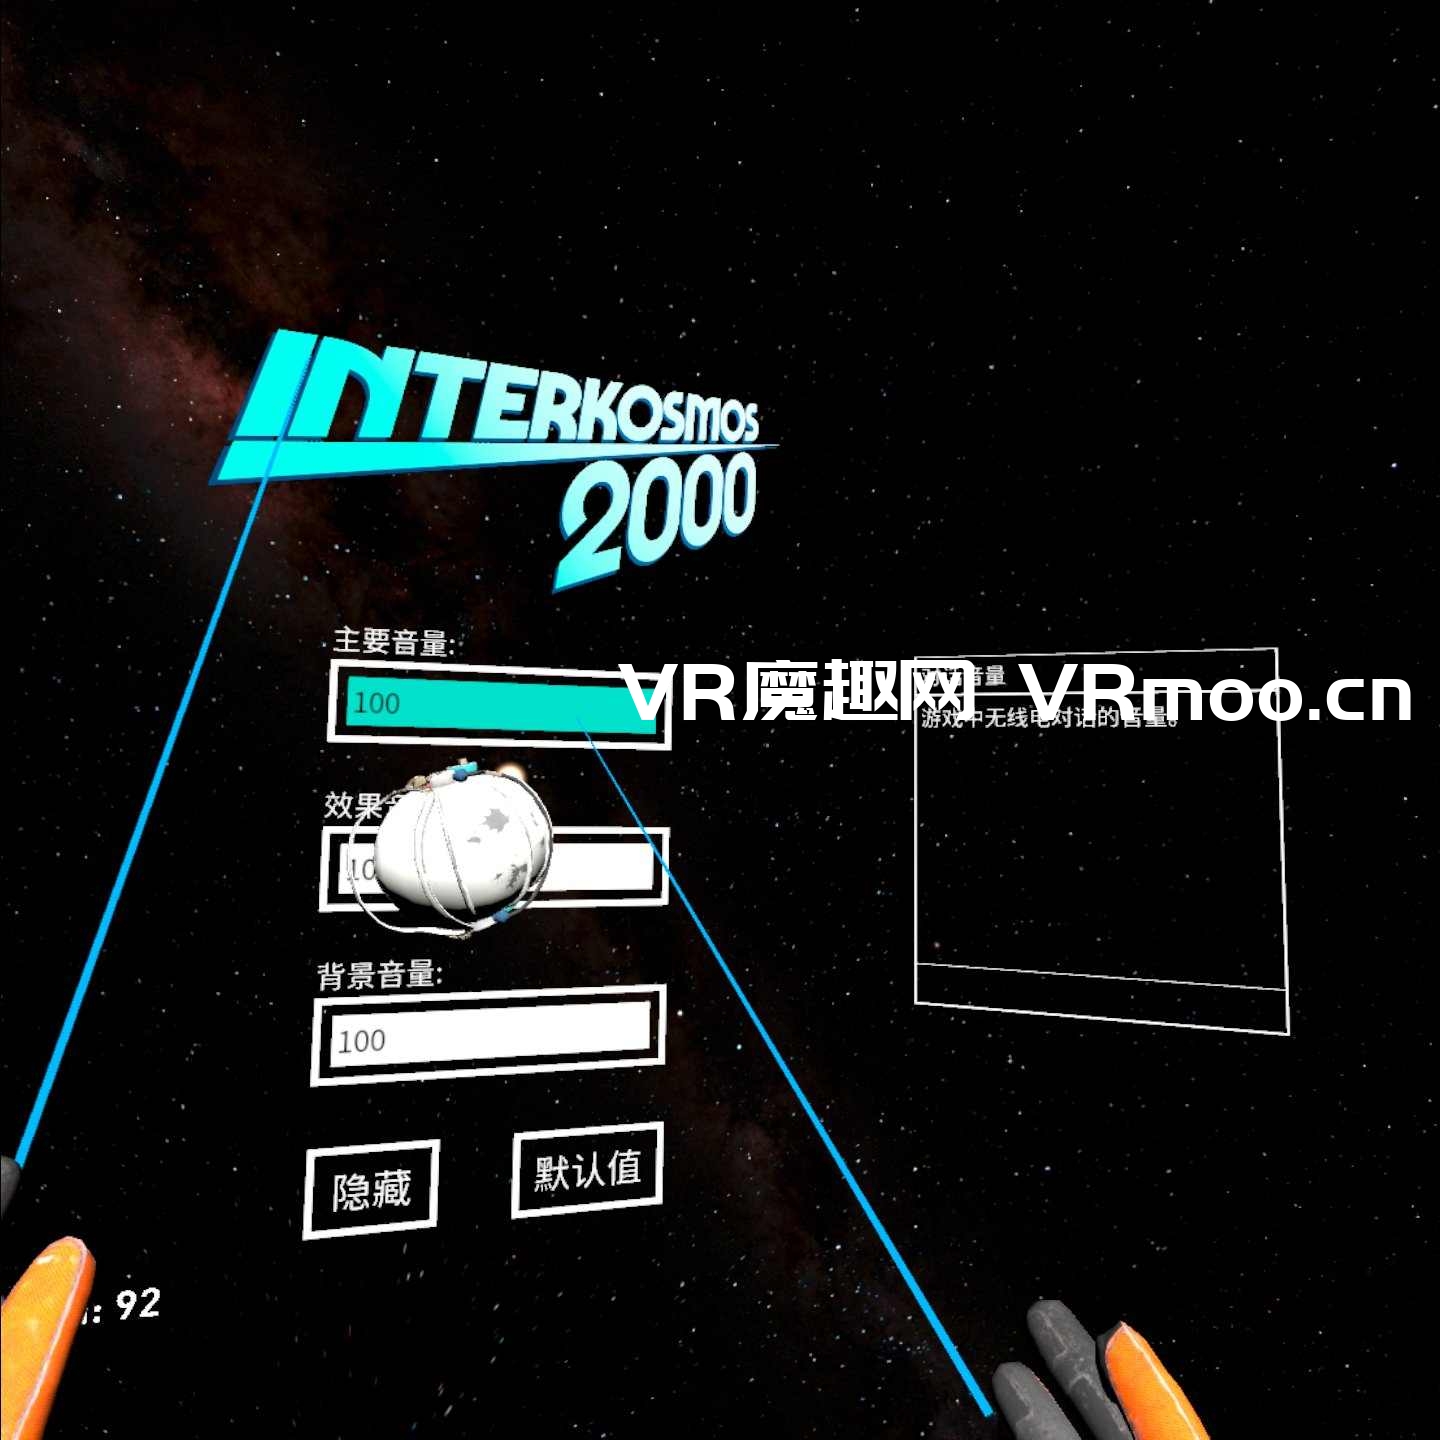 Oculus Quest 游戏《宇宙空间 2000 汉化中文版》Interkosmos 2000